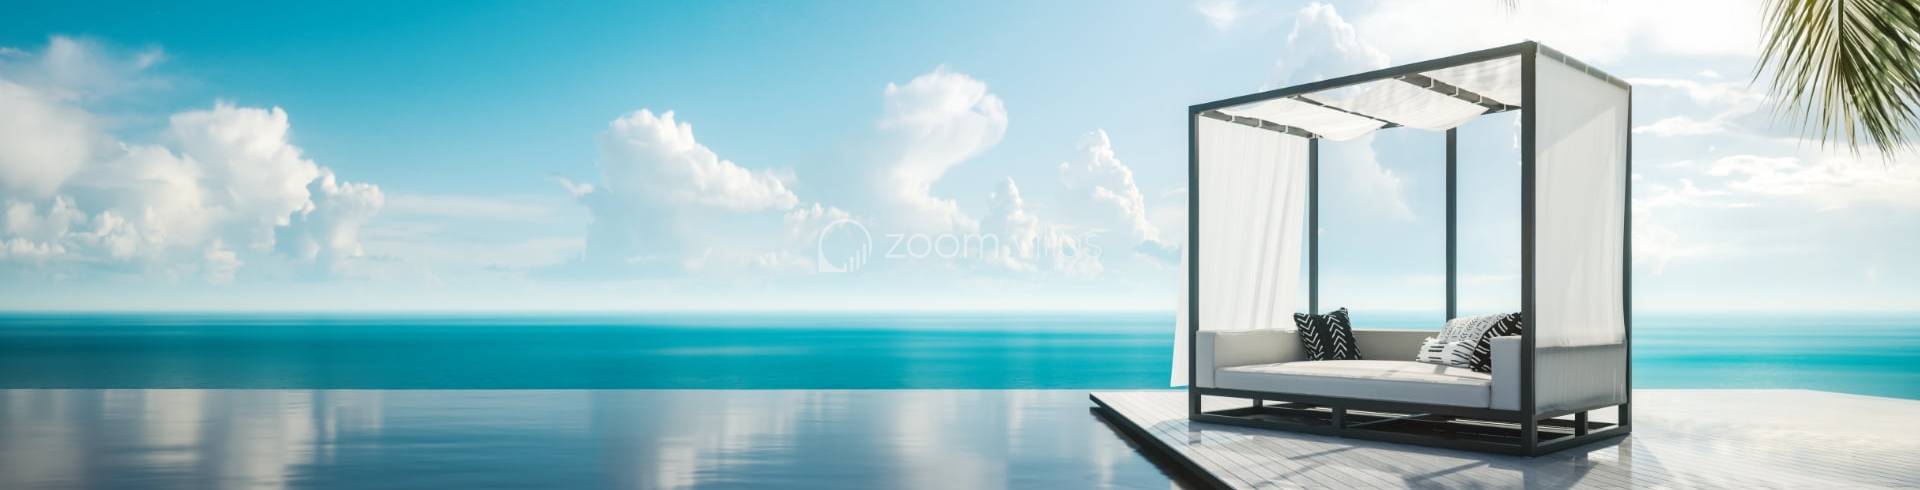 Welkom 2024: Een nieuw hoofdstuk met Zoom Villas in Moraira